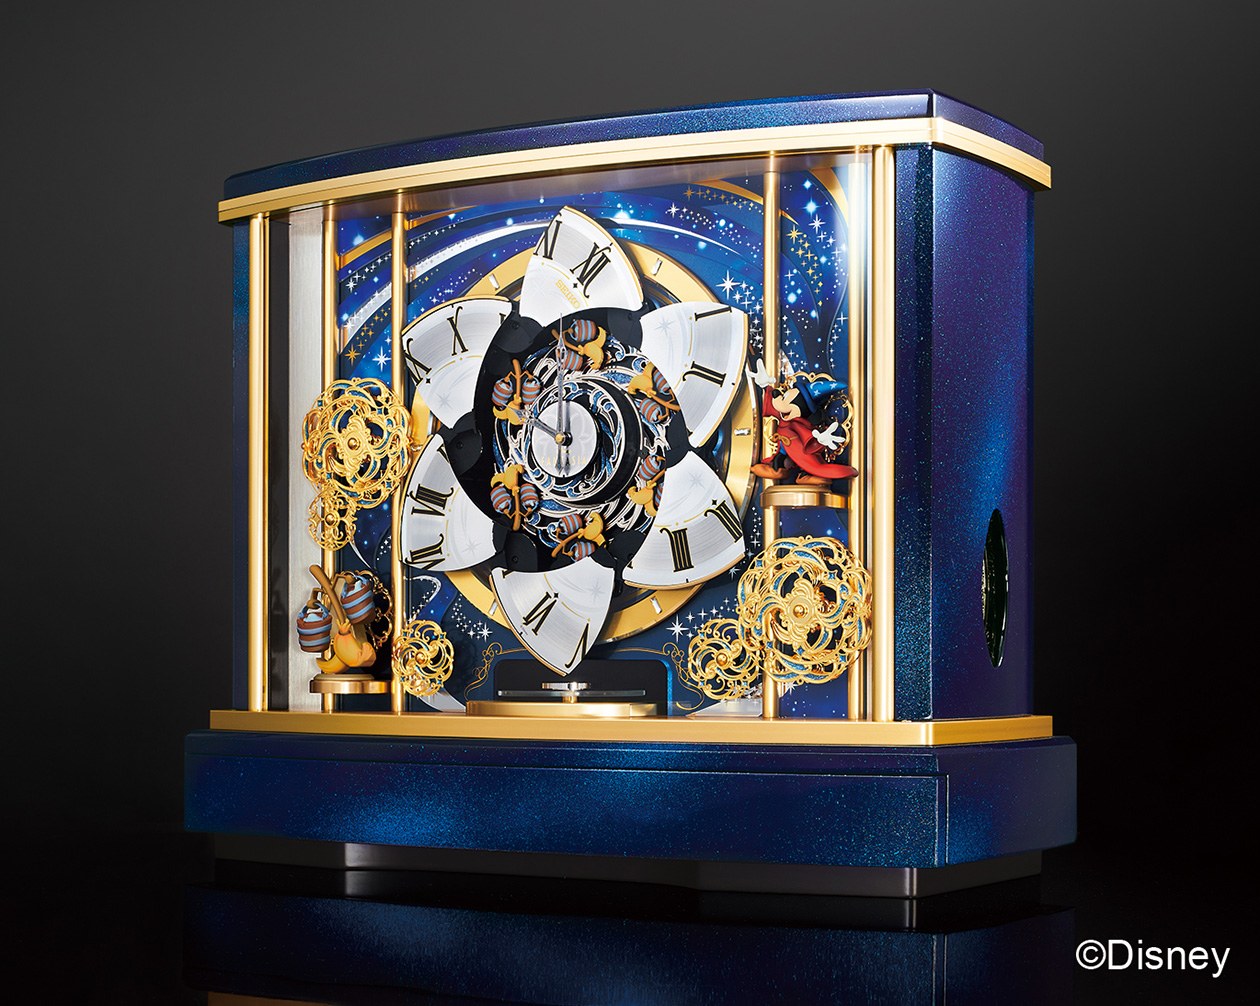 ディズニー映画『ファンタジア』のからくり時計が登場。5台限定で1100万円